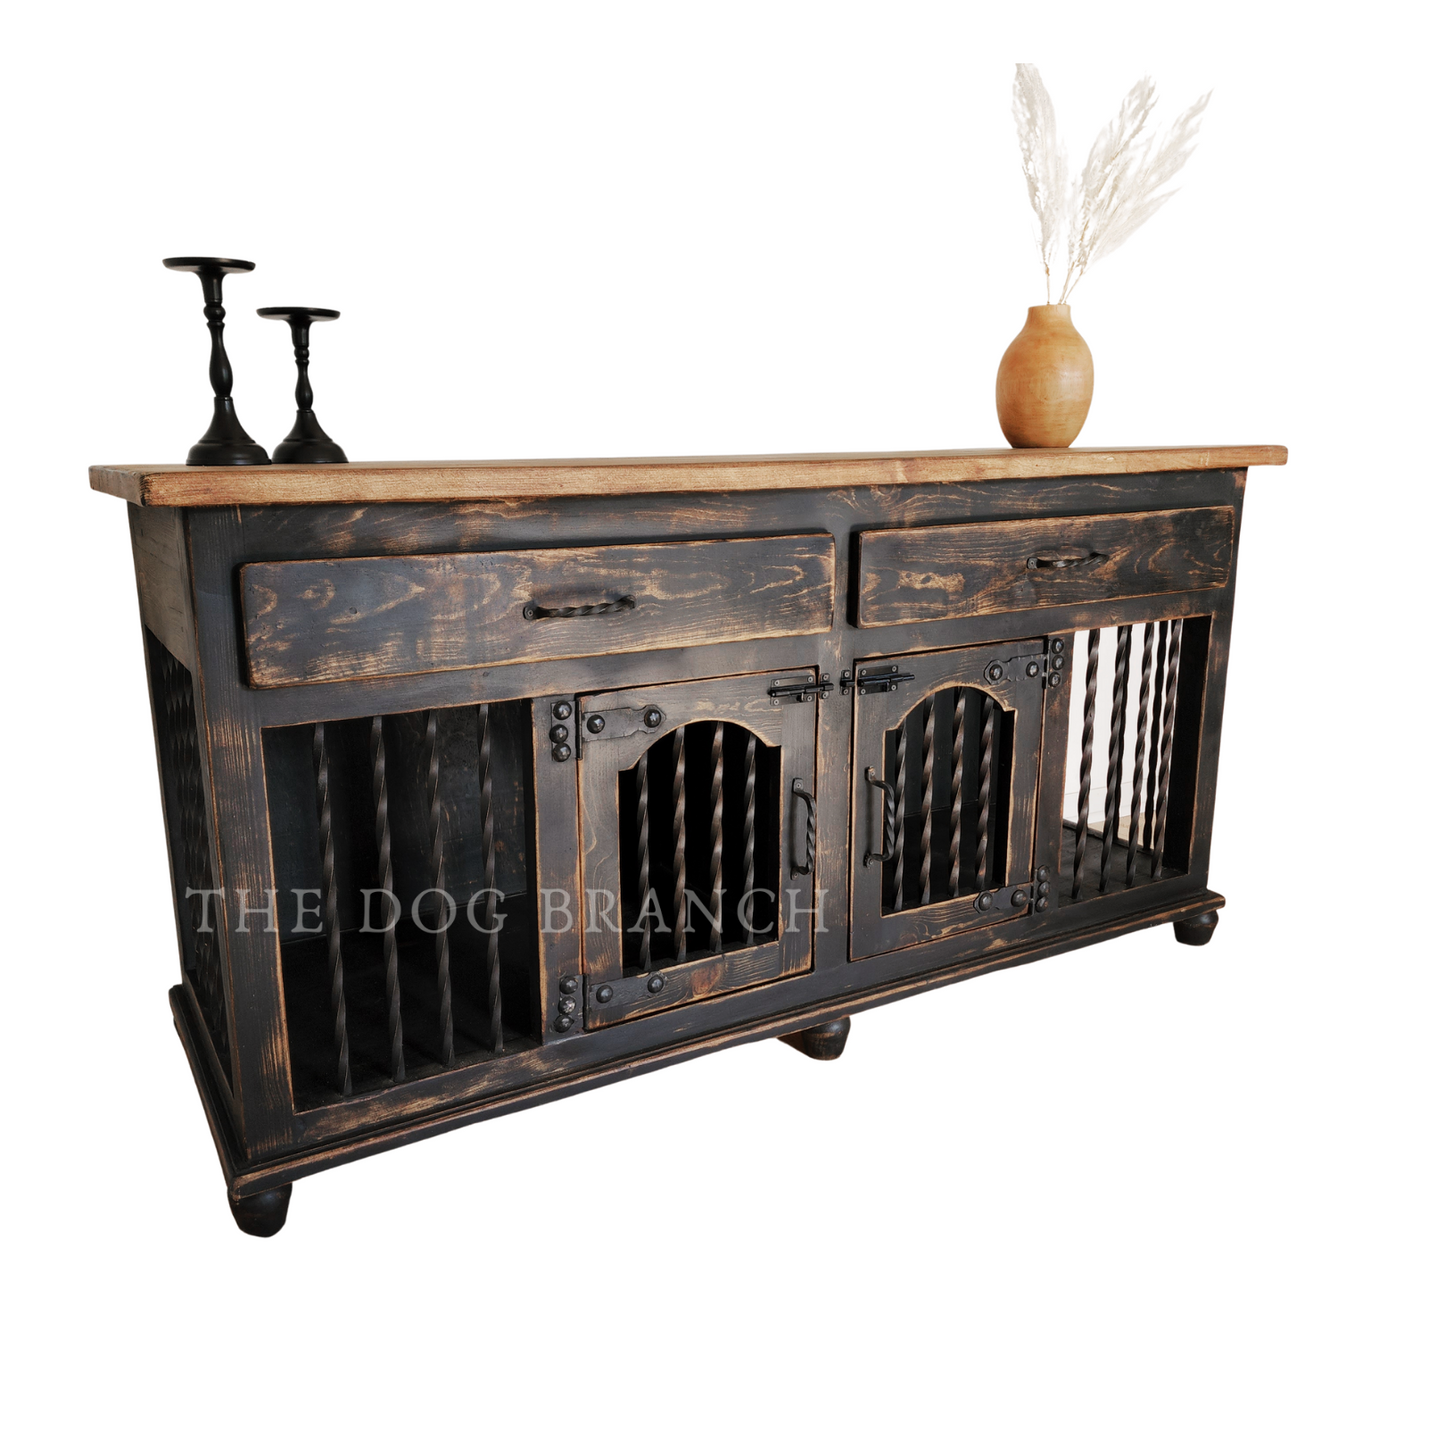 Dog crate furniture - Rustic Cottage Dog kennel furniture - The Dog Branch Large double dog crate furniture, Custom wood dog kennel